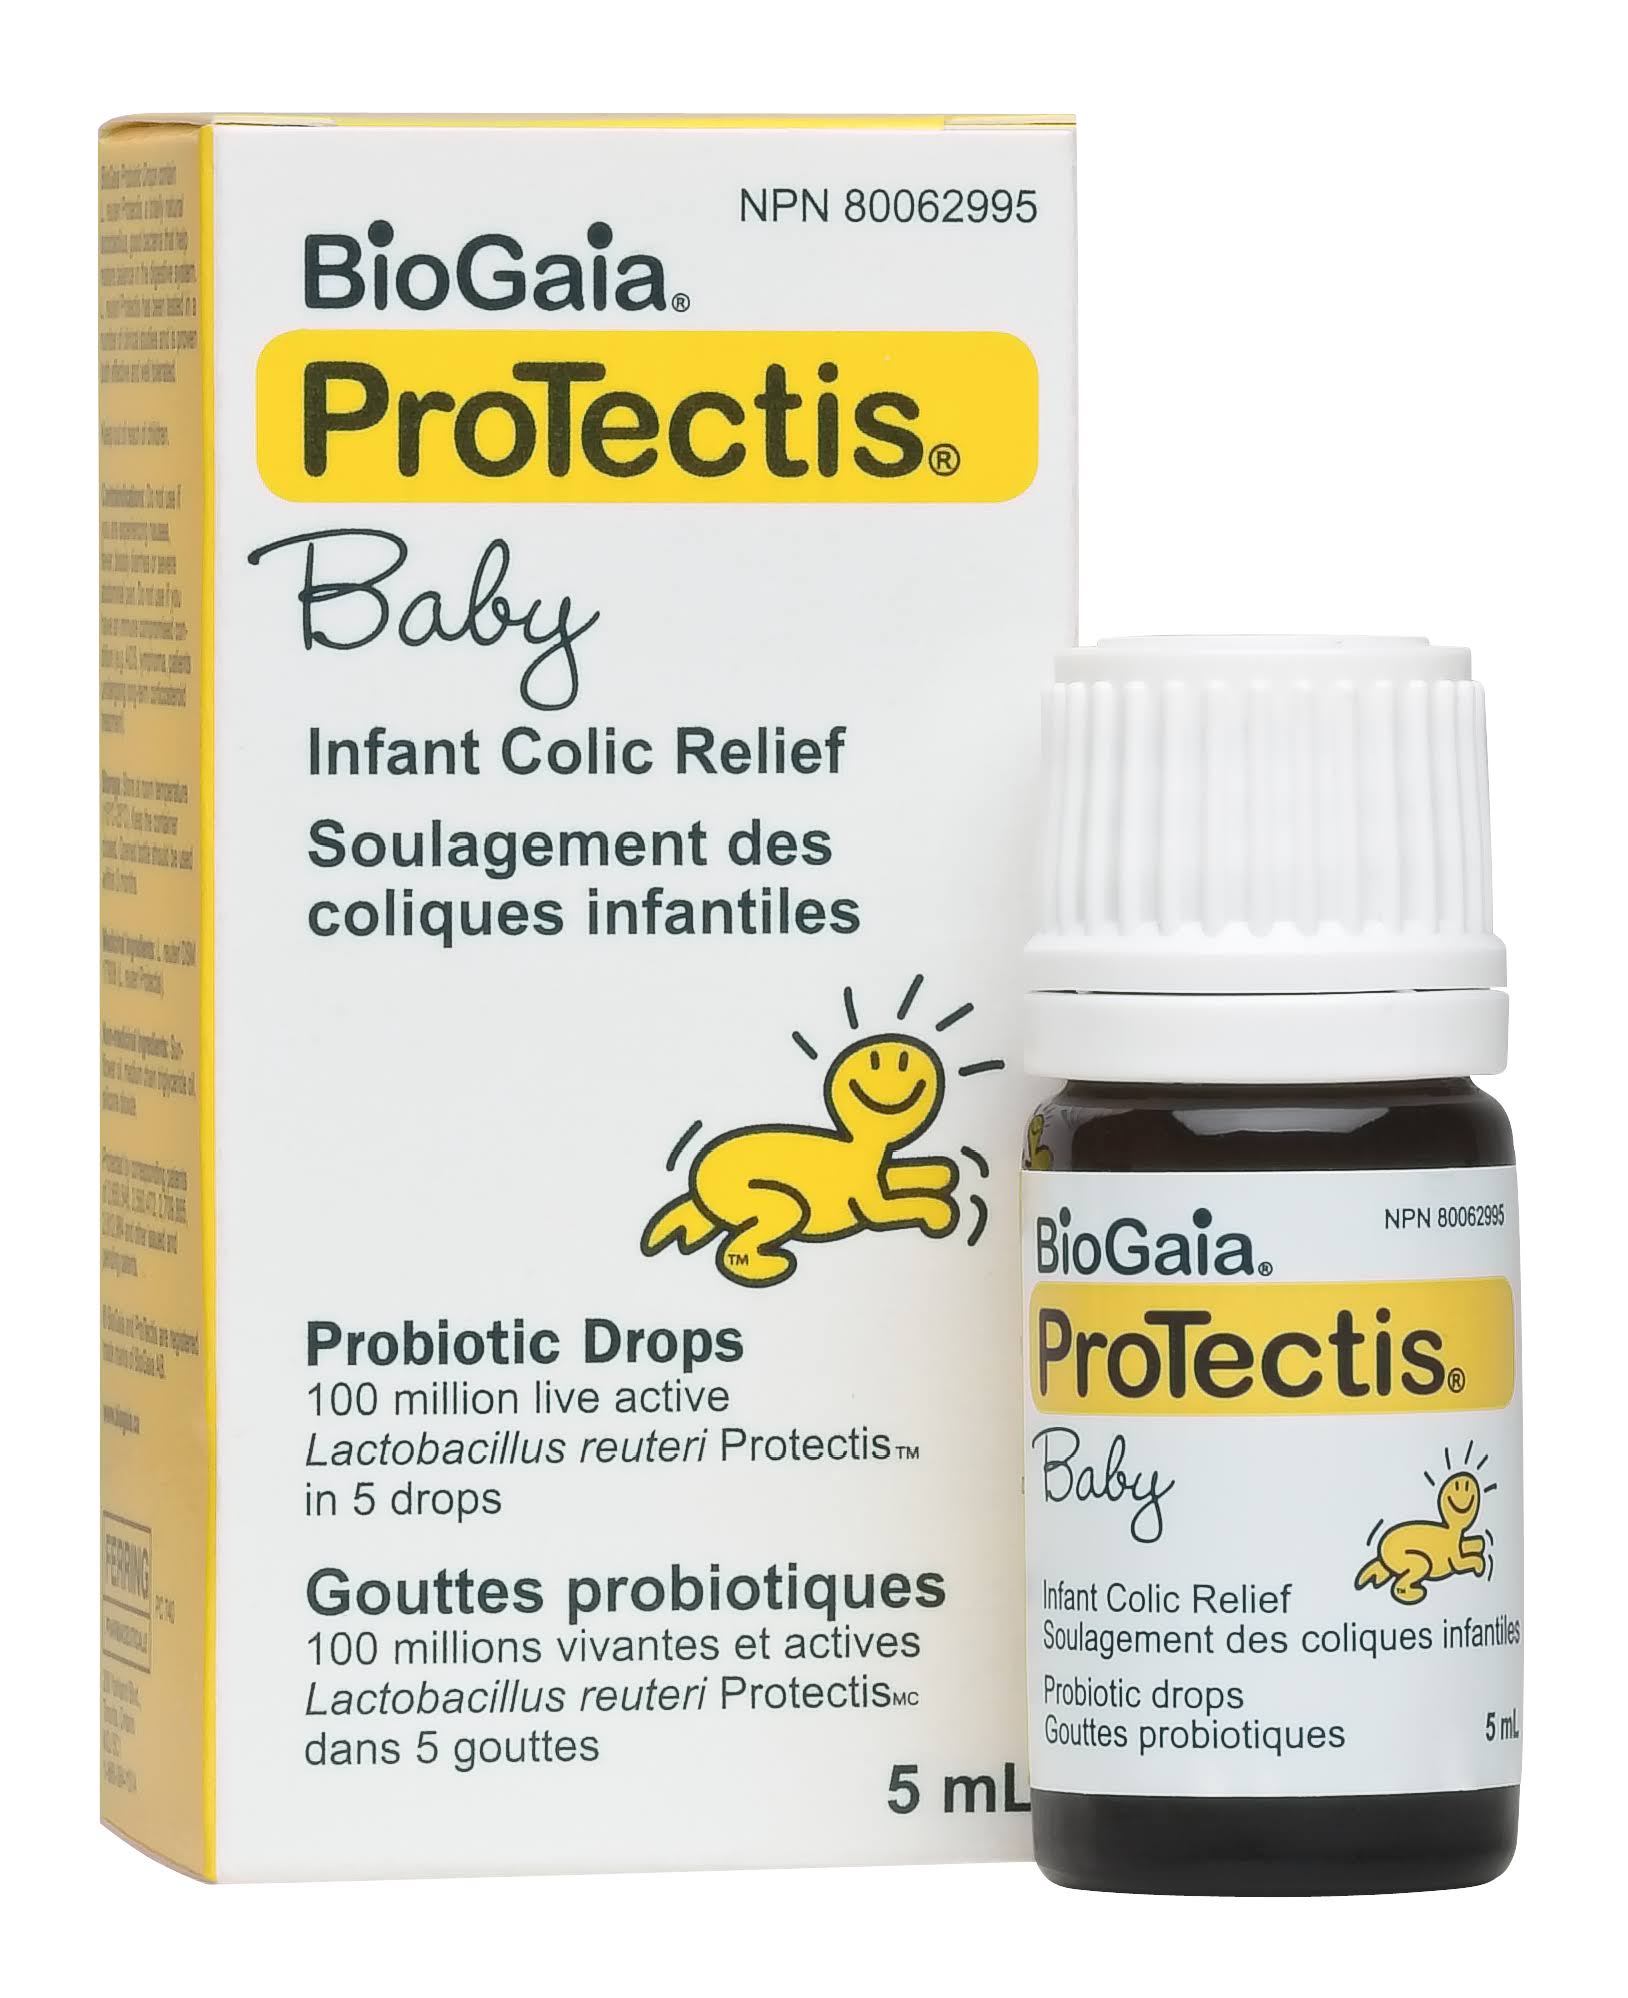 BioGaia Protectis Probiotic Drops - 5ml